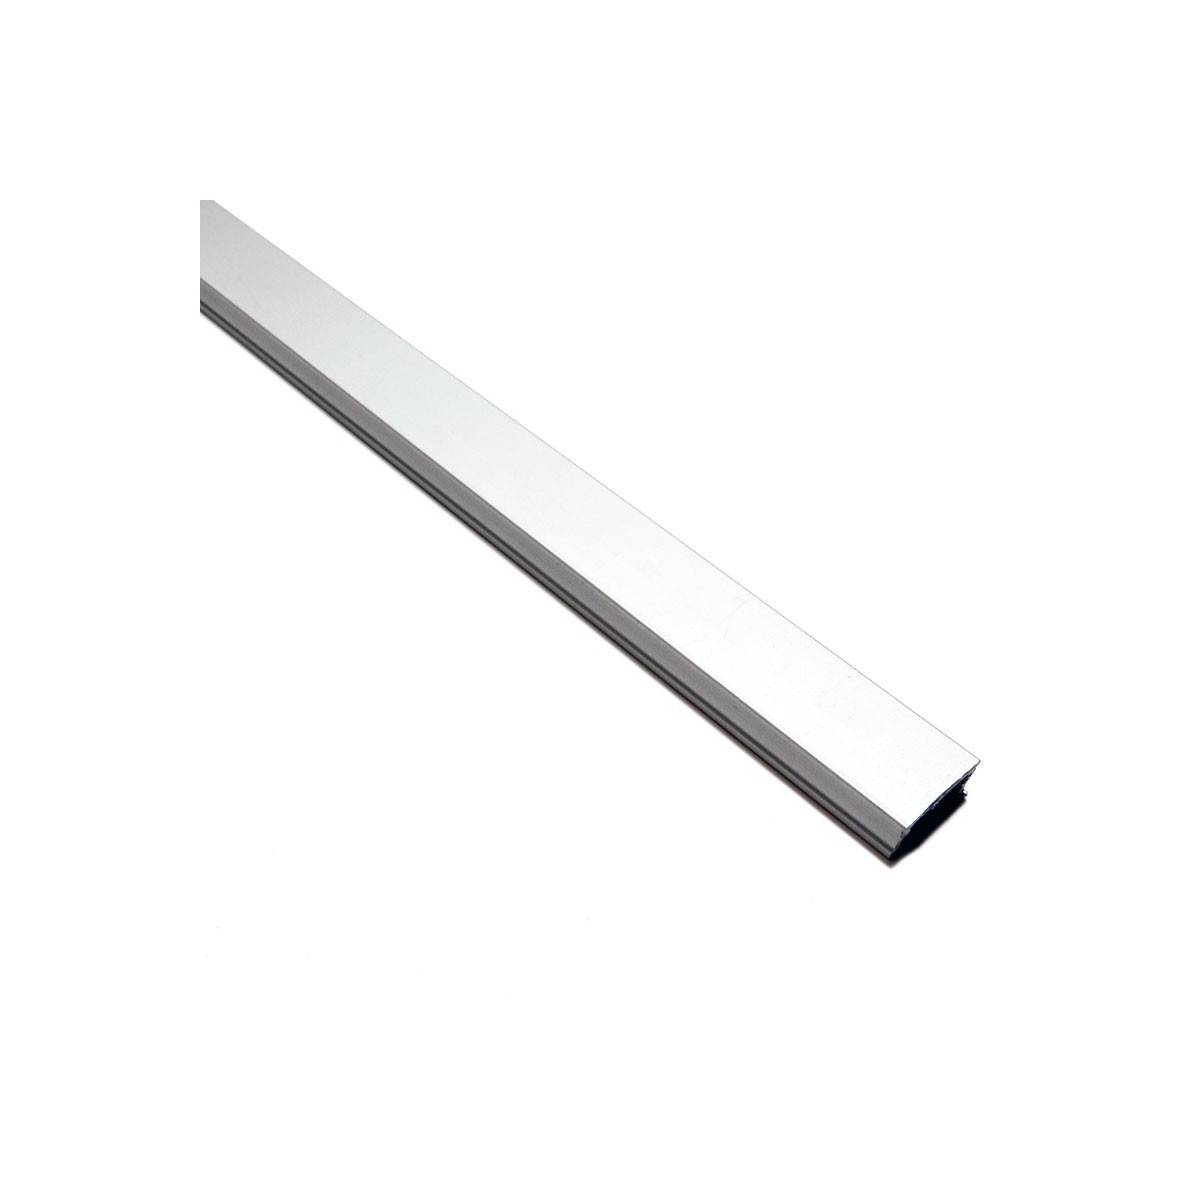 Profilo superficiale in alluminio estruso 17x8mm (Bar 2ml)